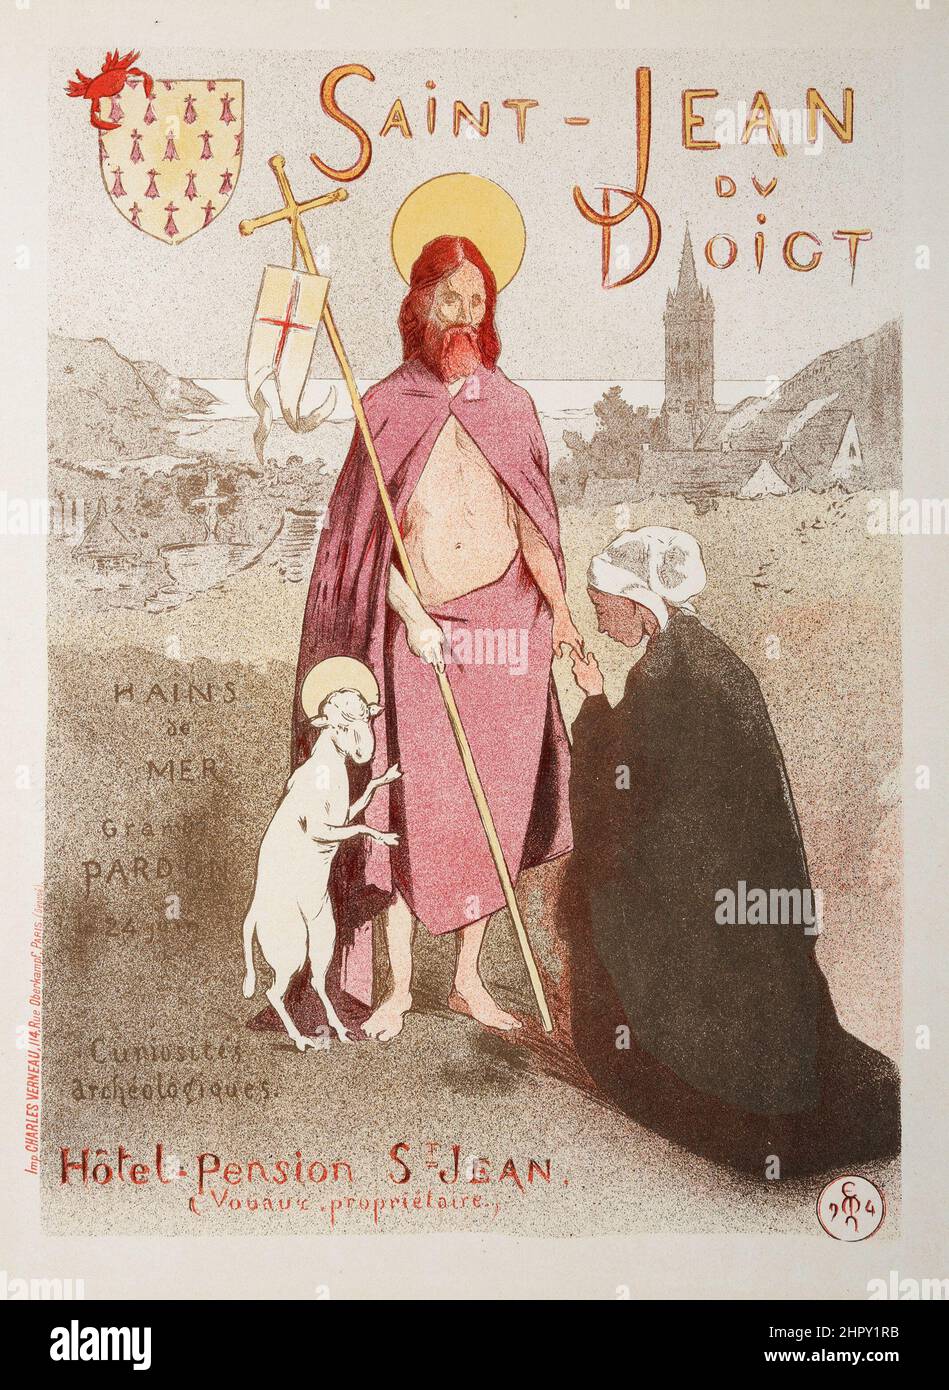 Etienne Moreau-Nelaton (1859-1927). Saint-Jean de Doigt (von Les Maitres de L'Affiche), Platte 178. Lithographie in Farben. 1899. Stockfoto